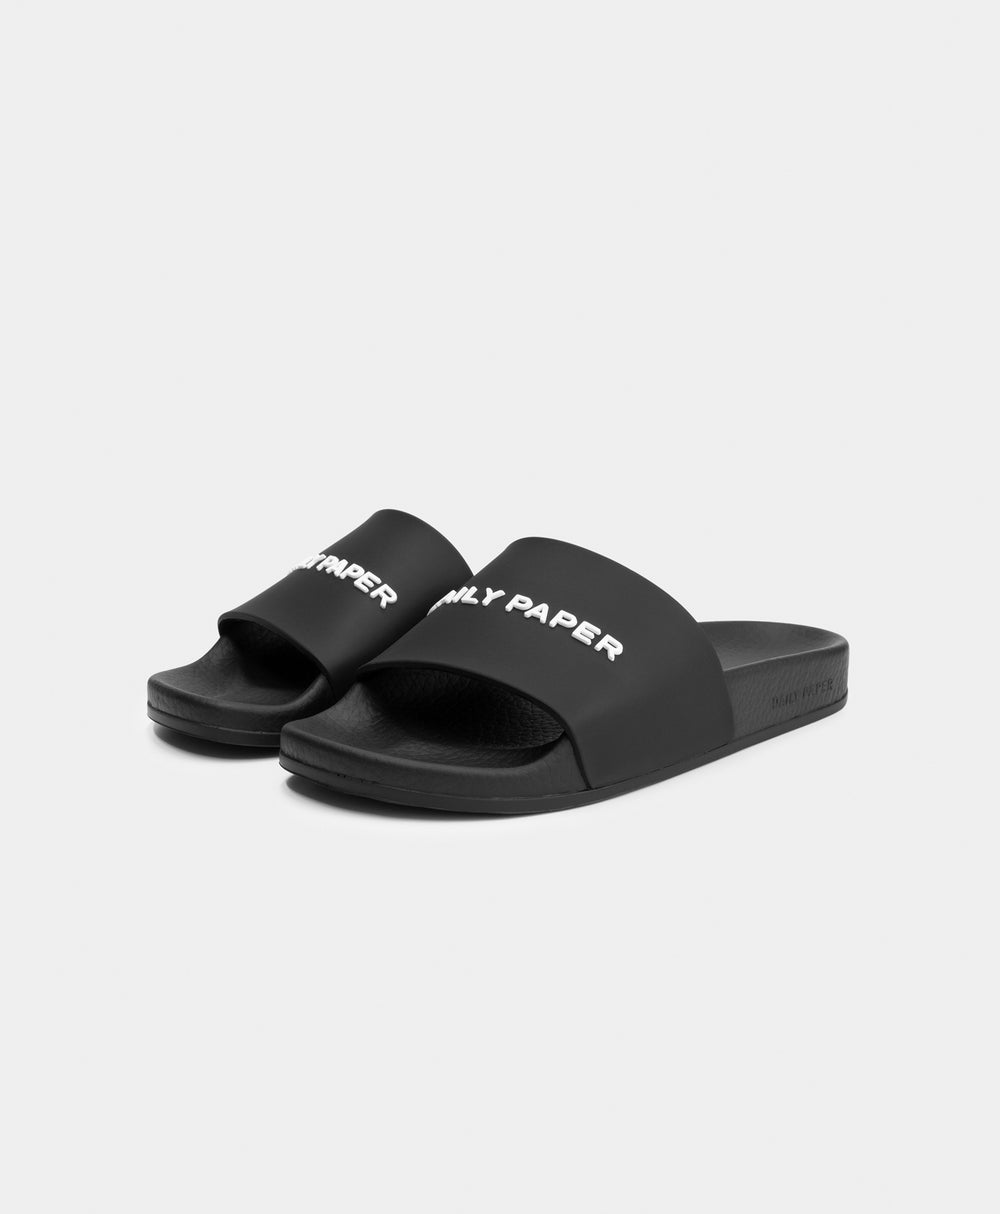 DP - Black Reslider Logo Type Sandals - Packshot - Front